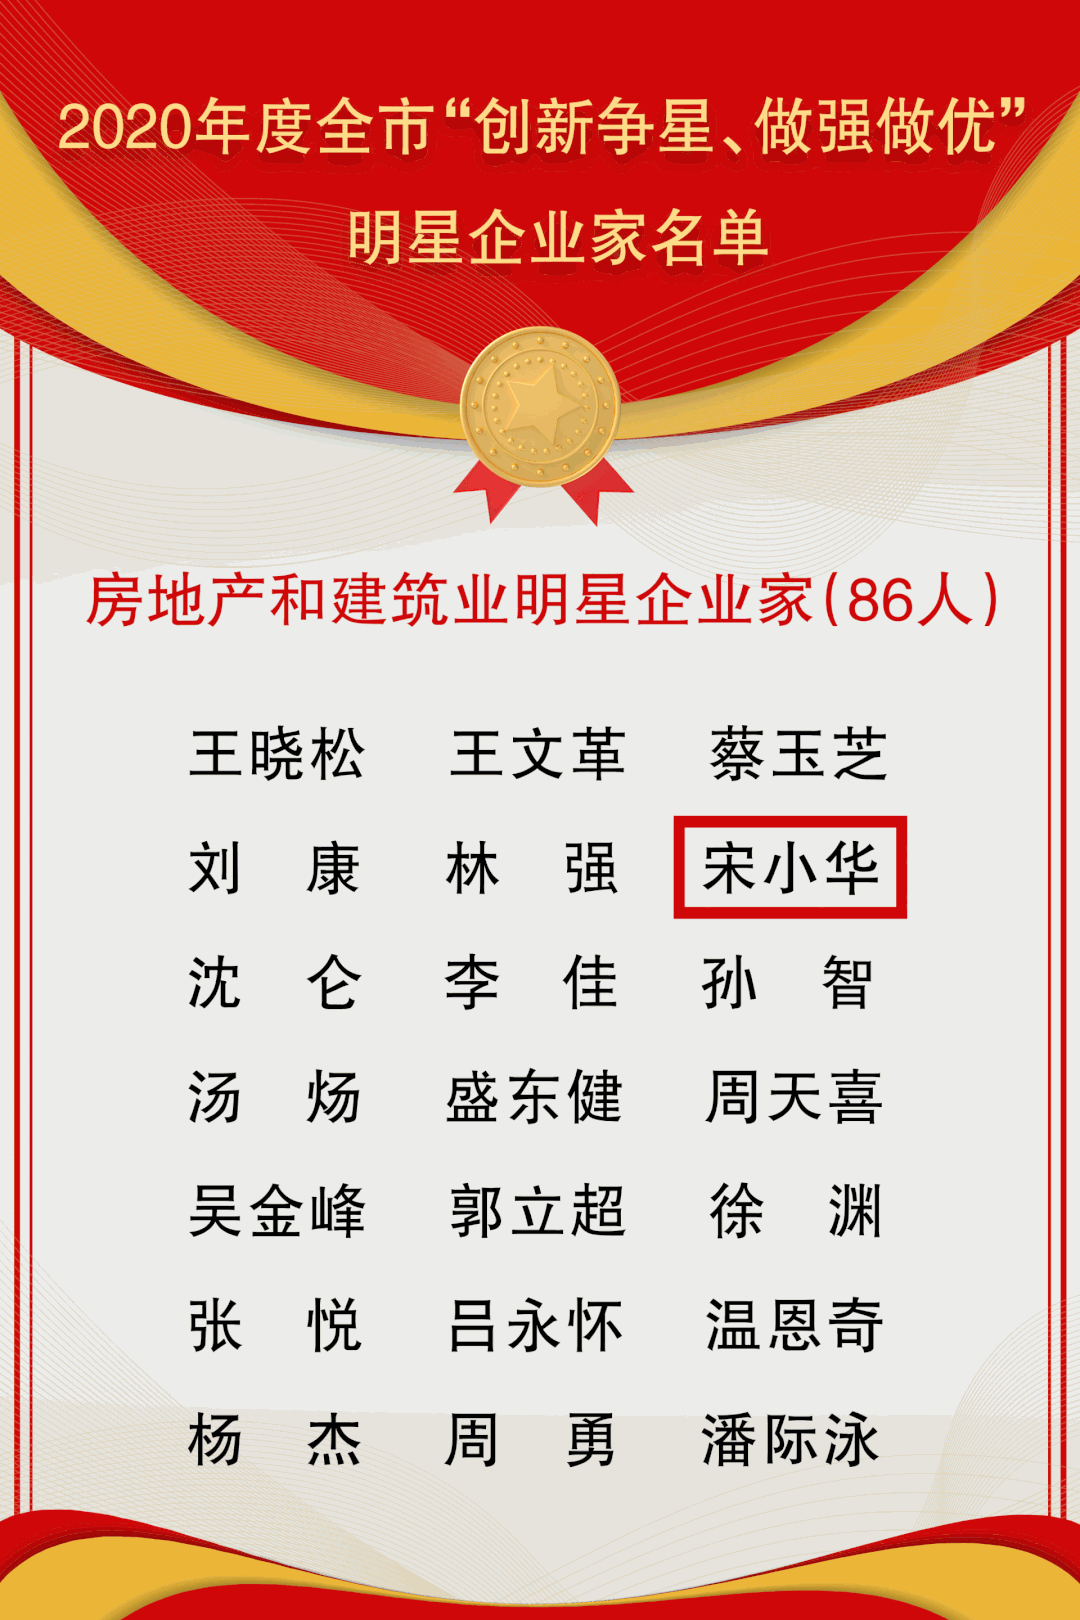 苏华集团又获常州三个大奖(图5)